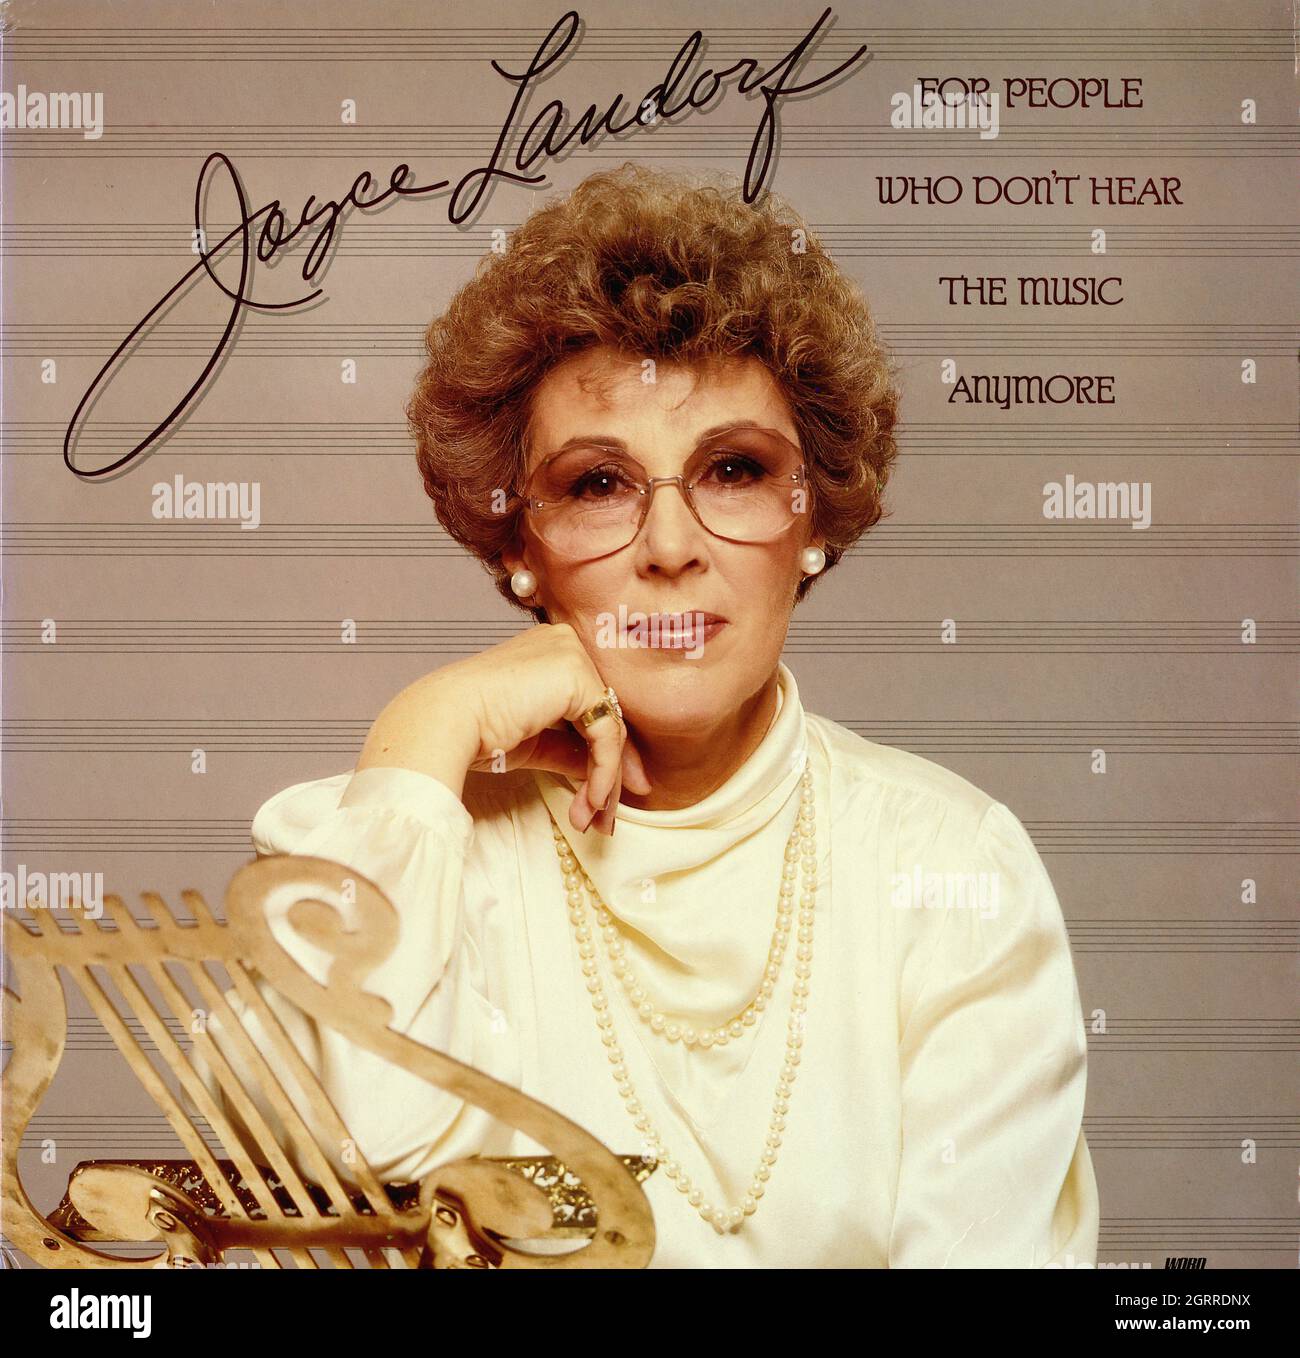 Joyce Landorf - für Leute, die die Musik nicht mehr hören - Vintage American Christian Vinyl Album Stockfoto